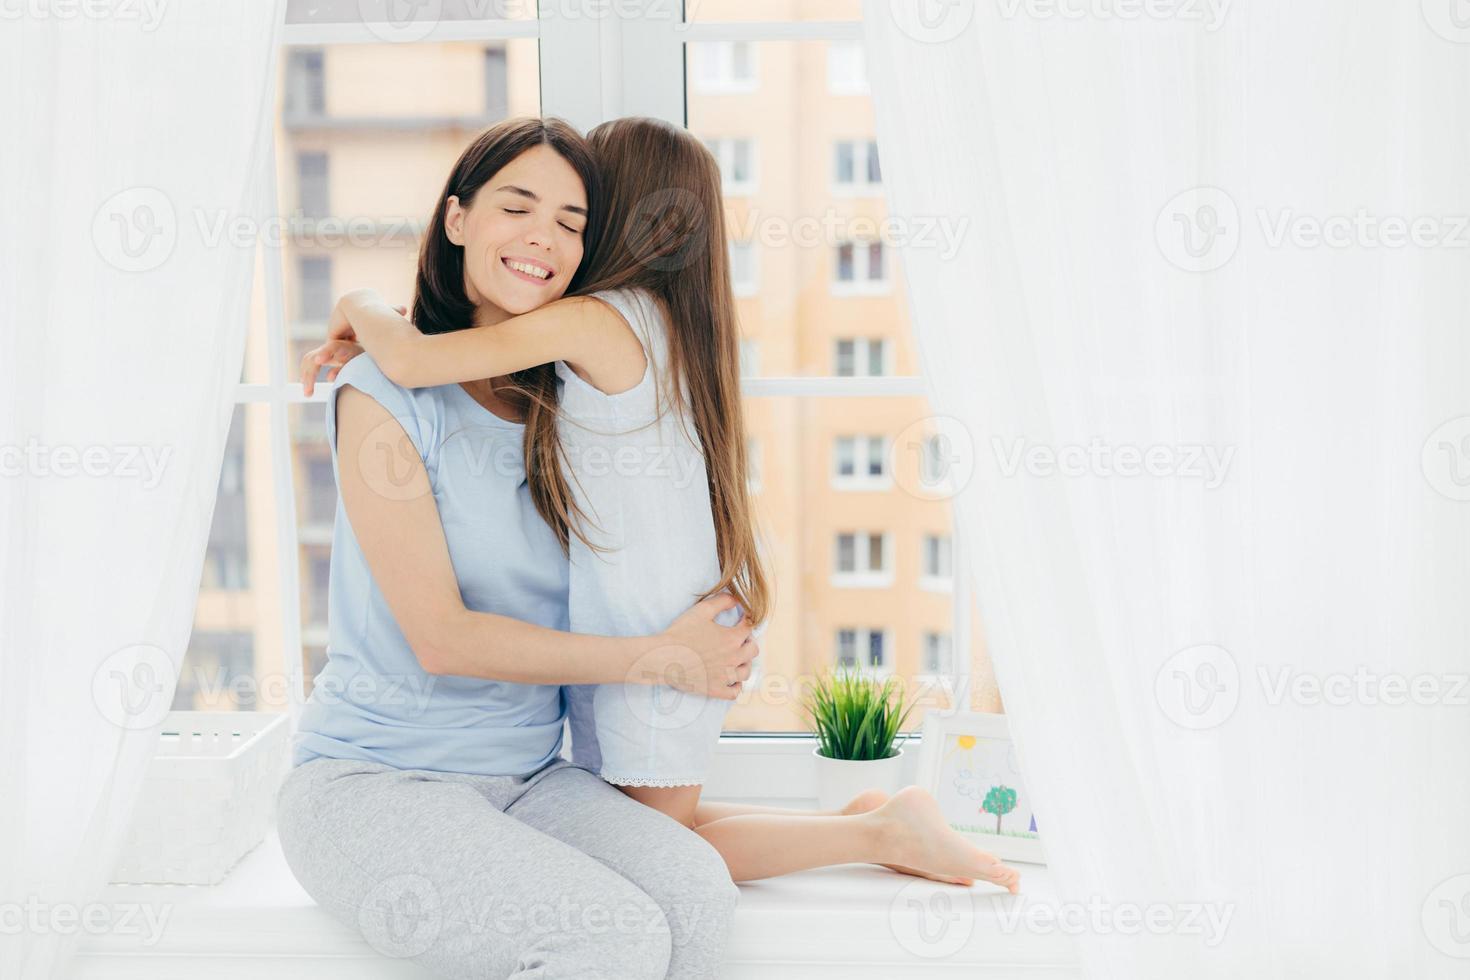 inhemsk atmosfär och föräldraskap koncept. glad mamma omfamnar sitt lilla kvinnliga barn, bär vardagskläder, poserar på fönsterbrädan, har ett vänskapligt förhållande, tillbringar helgen hemma tillsammans foto